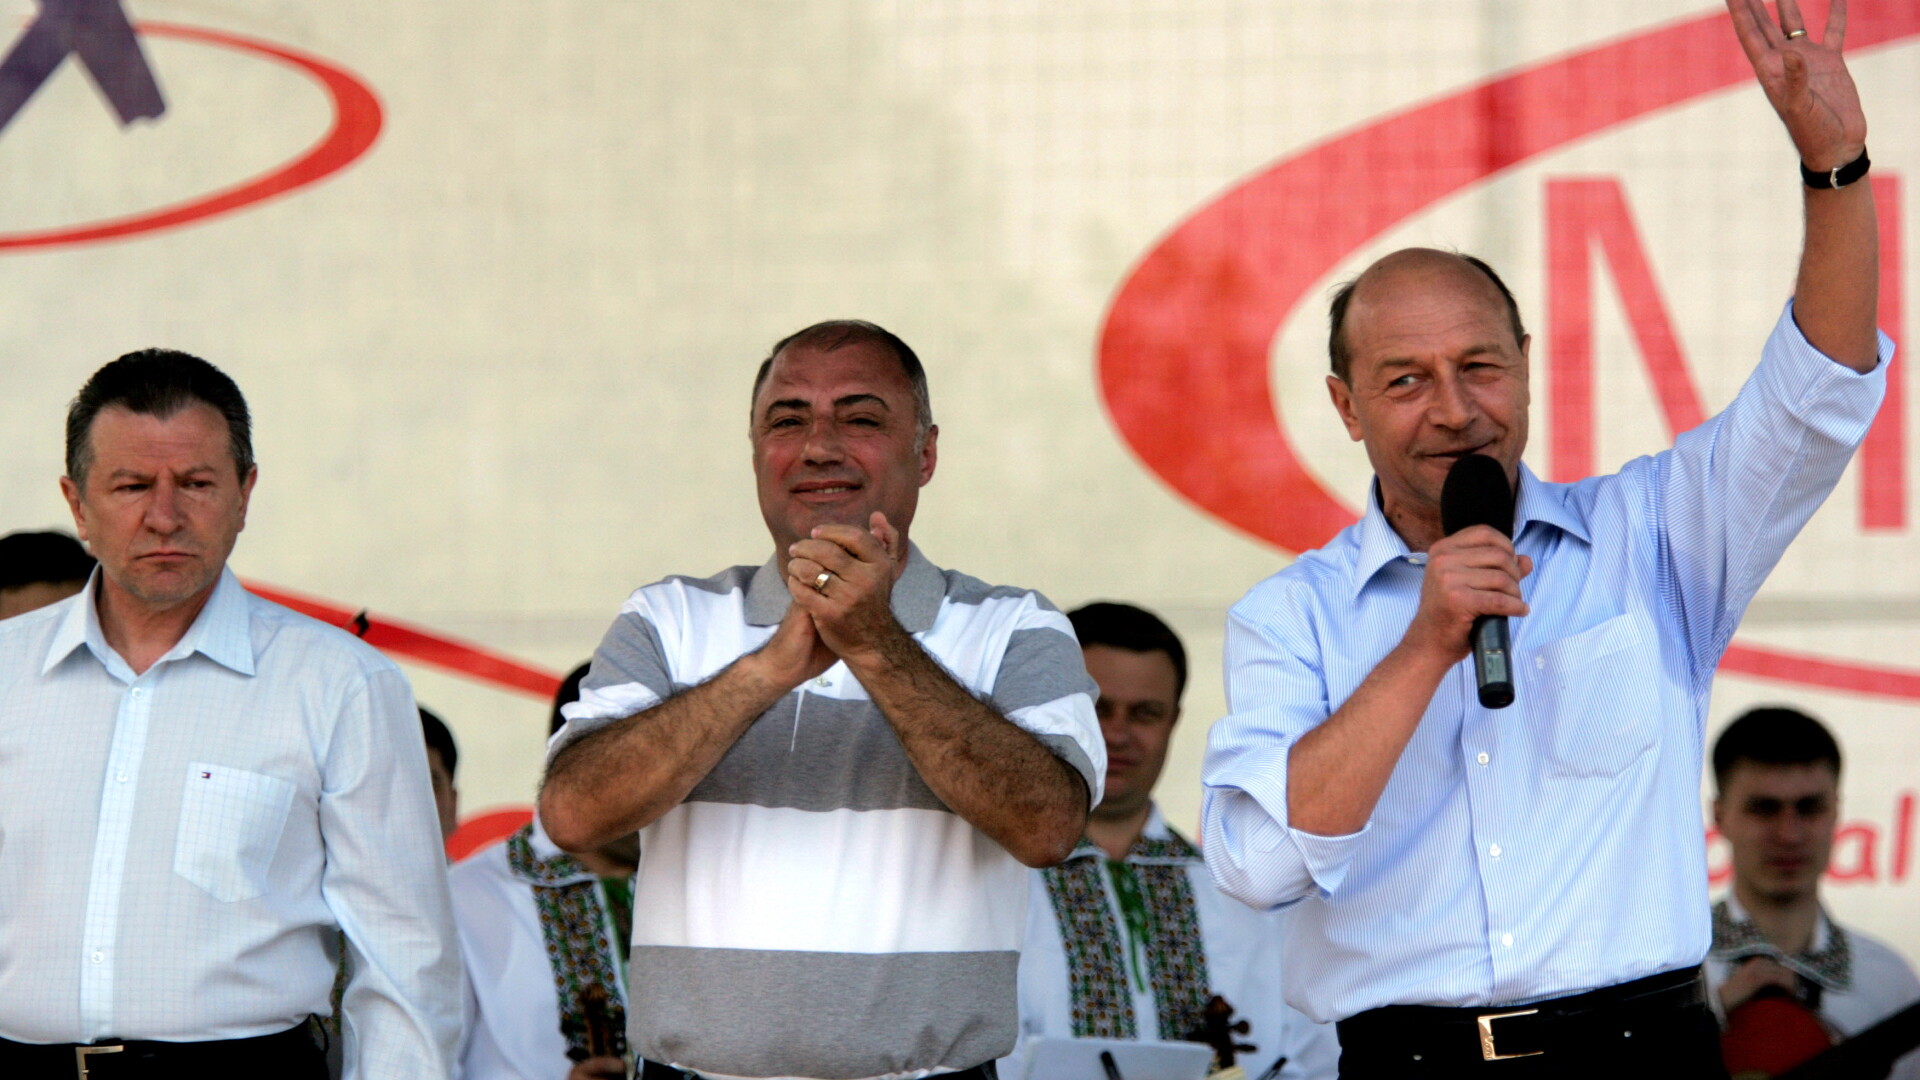 Radu Berceanu, Antonie Solomon si Traian Basescu